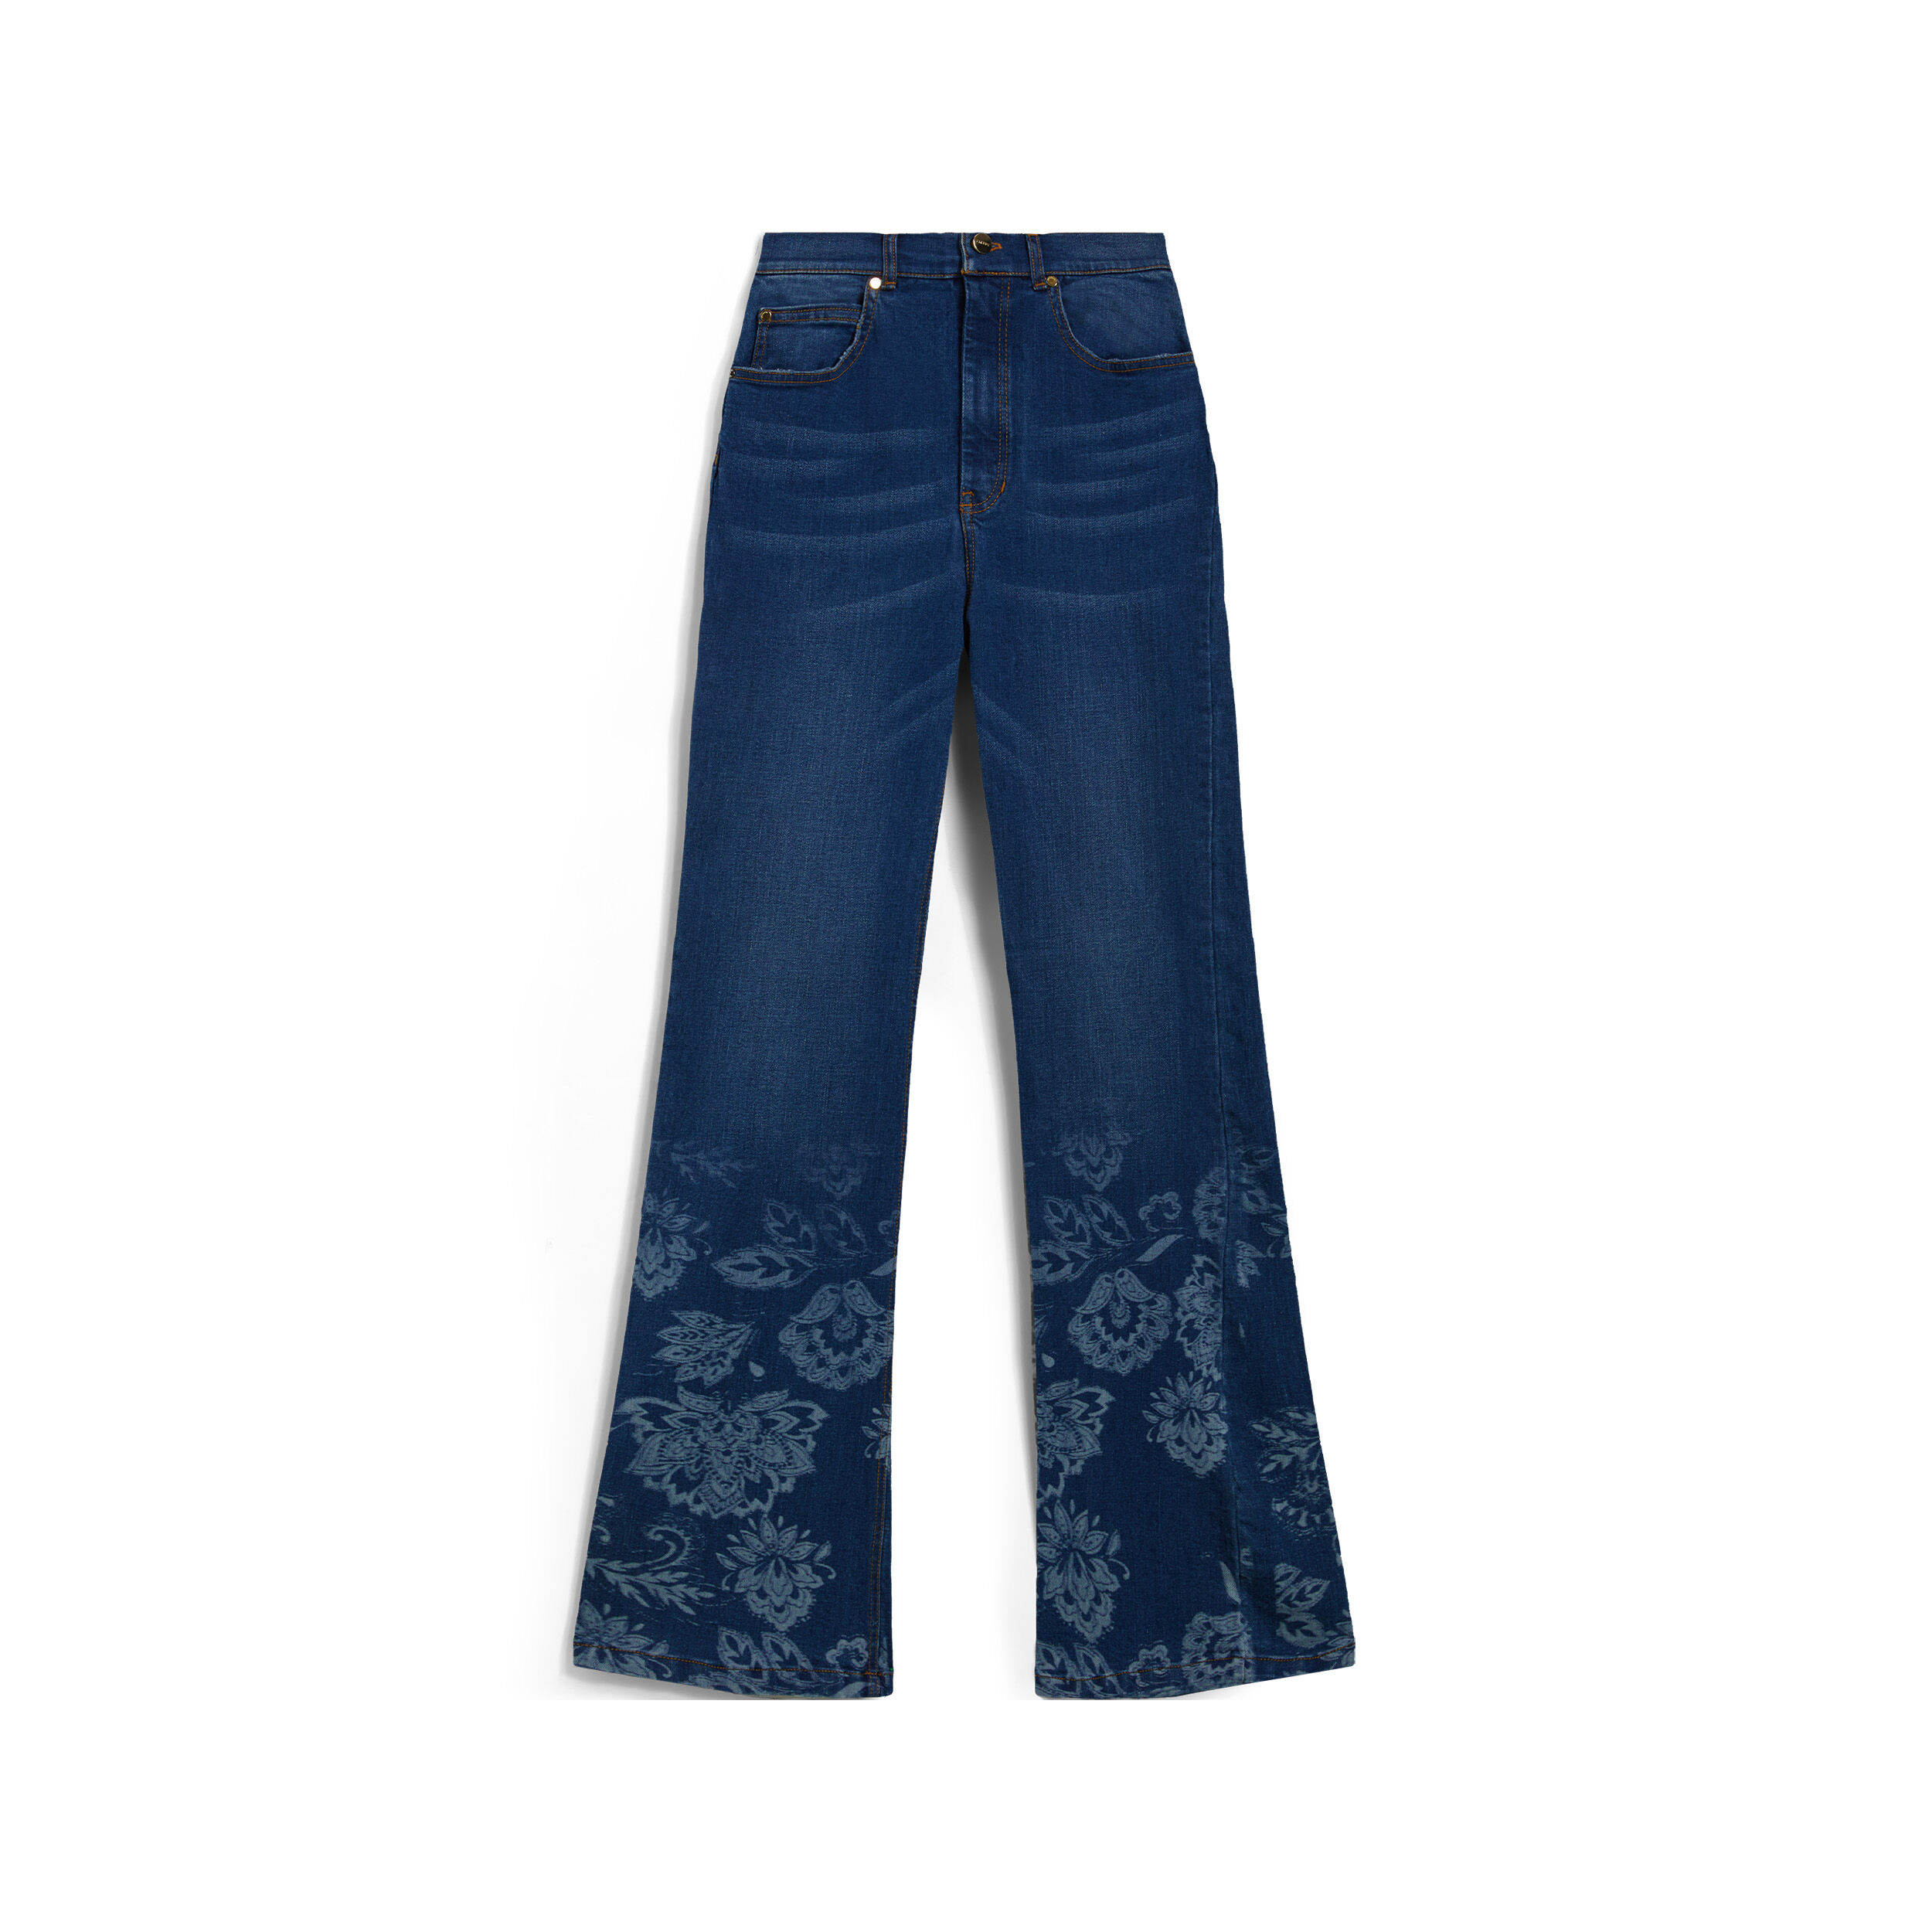 Freddy Jeans vita alta flondo a zampa decorato da grafica floreale Denim Blu Medio-Tob. Seams Donna Medium